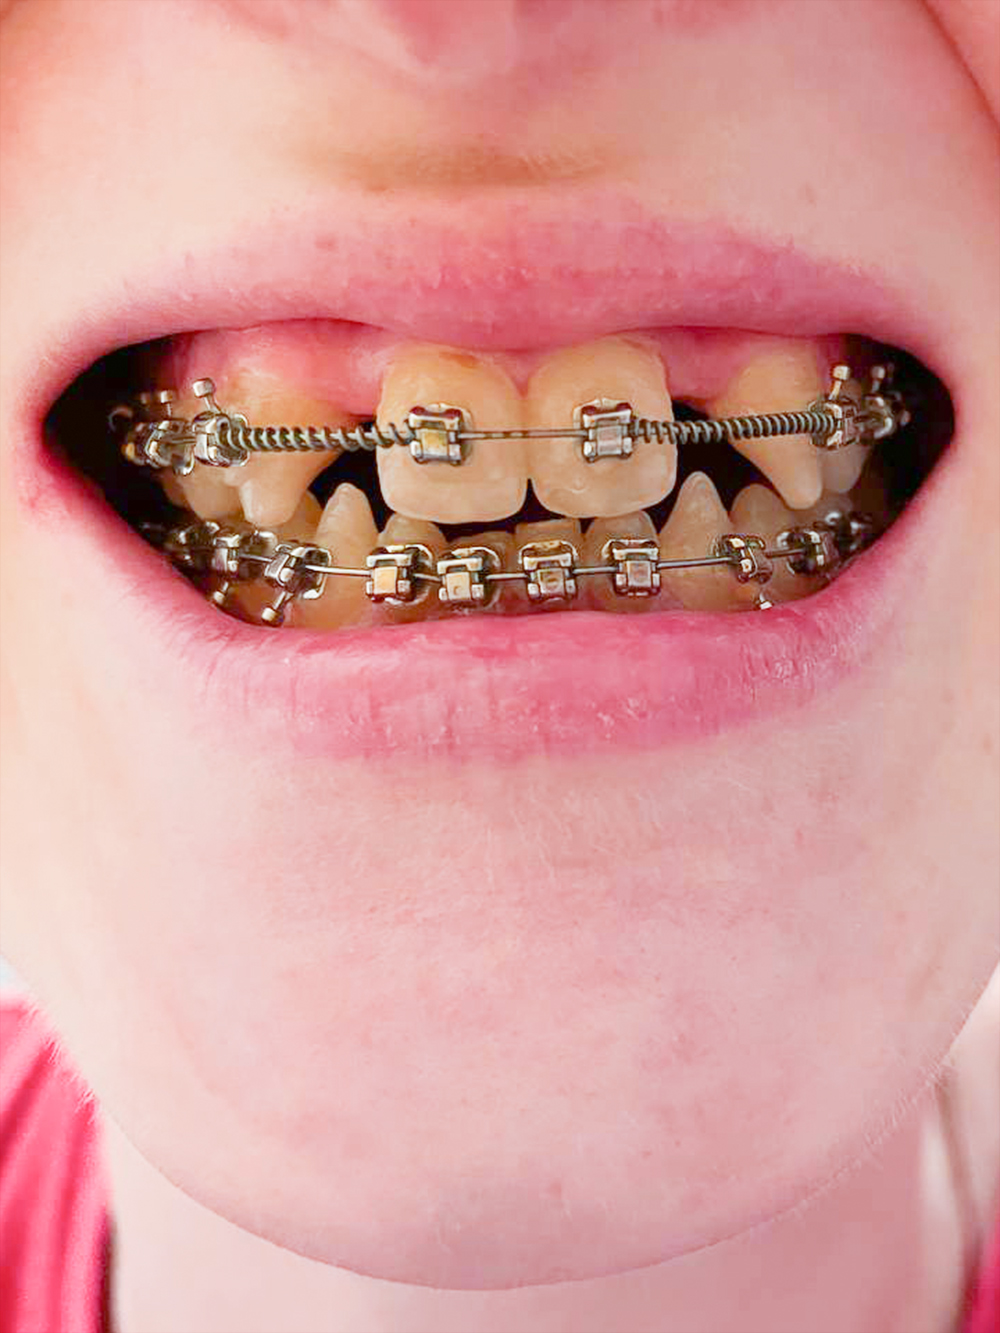 Зубы с брекетами через шесть месяцев с начала лечения. Фото до коррекции нет, потому что улыбалась я мало